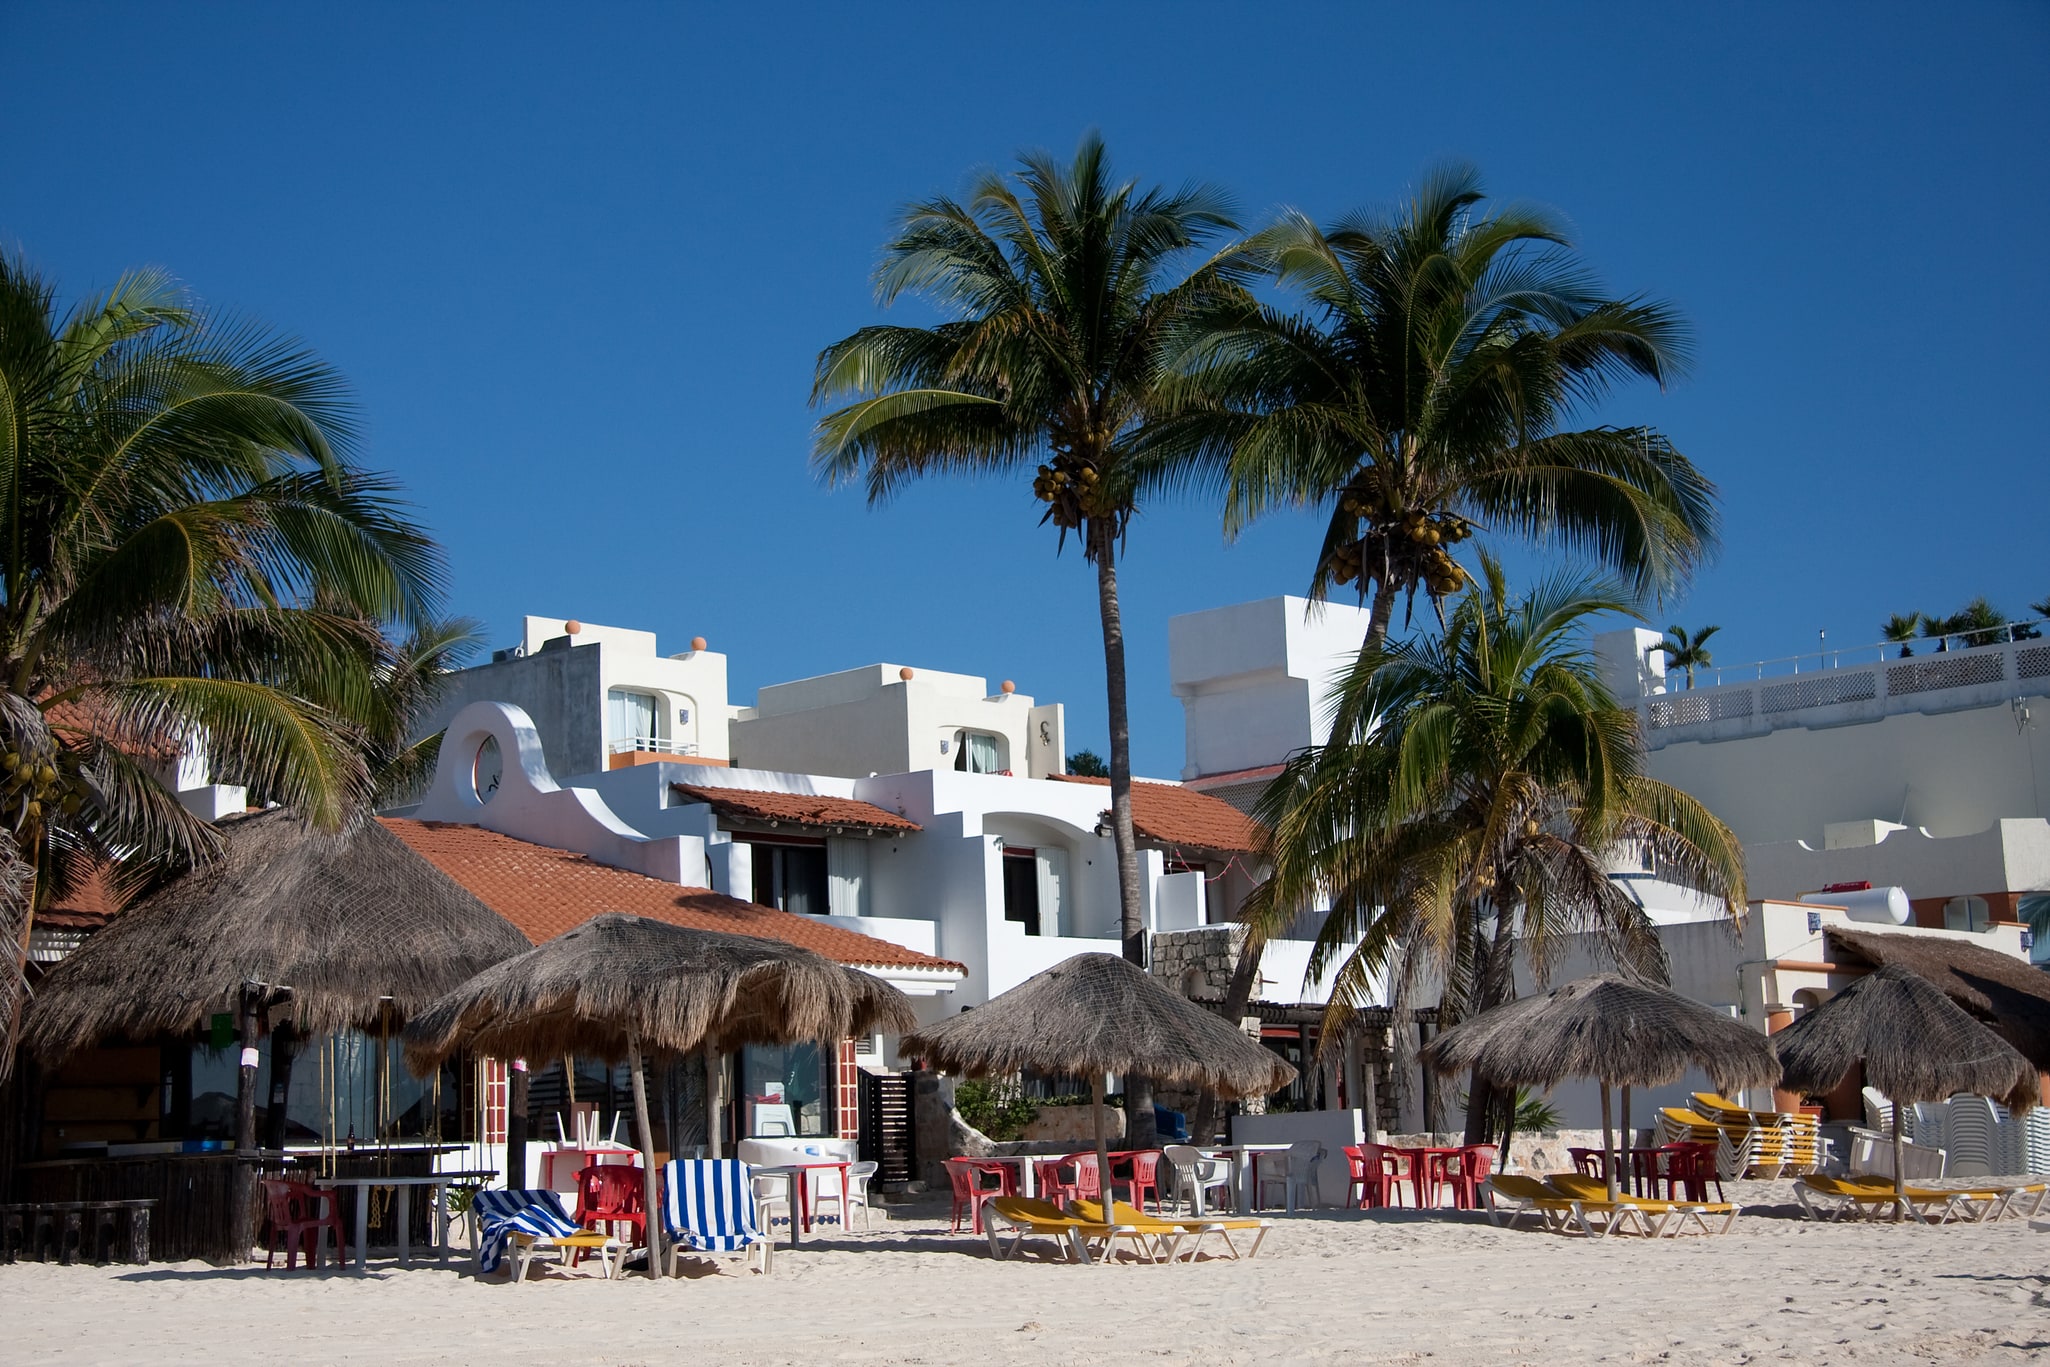 Playa del Carmen, Mexico